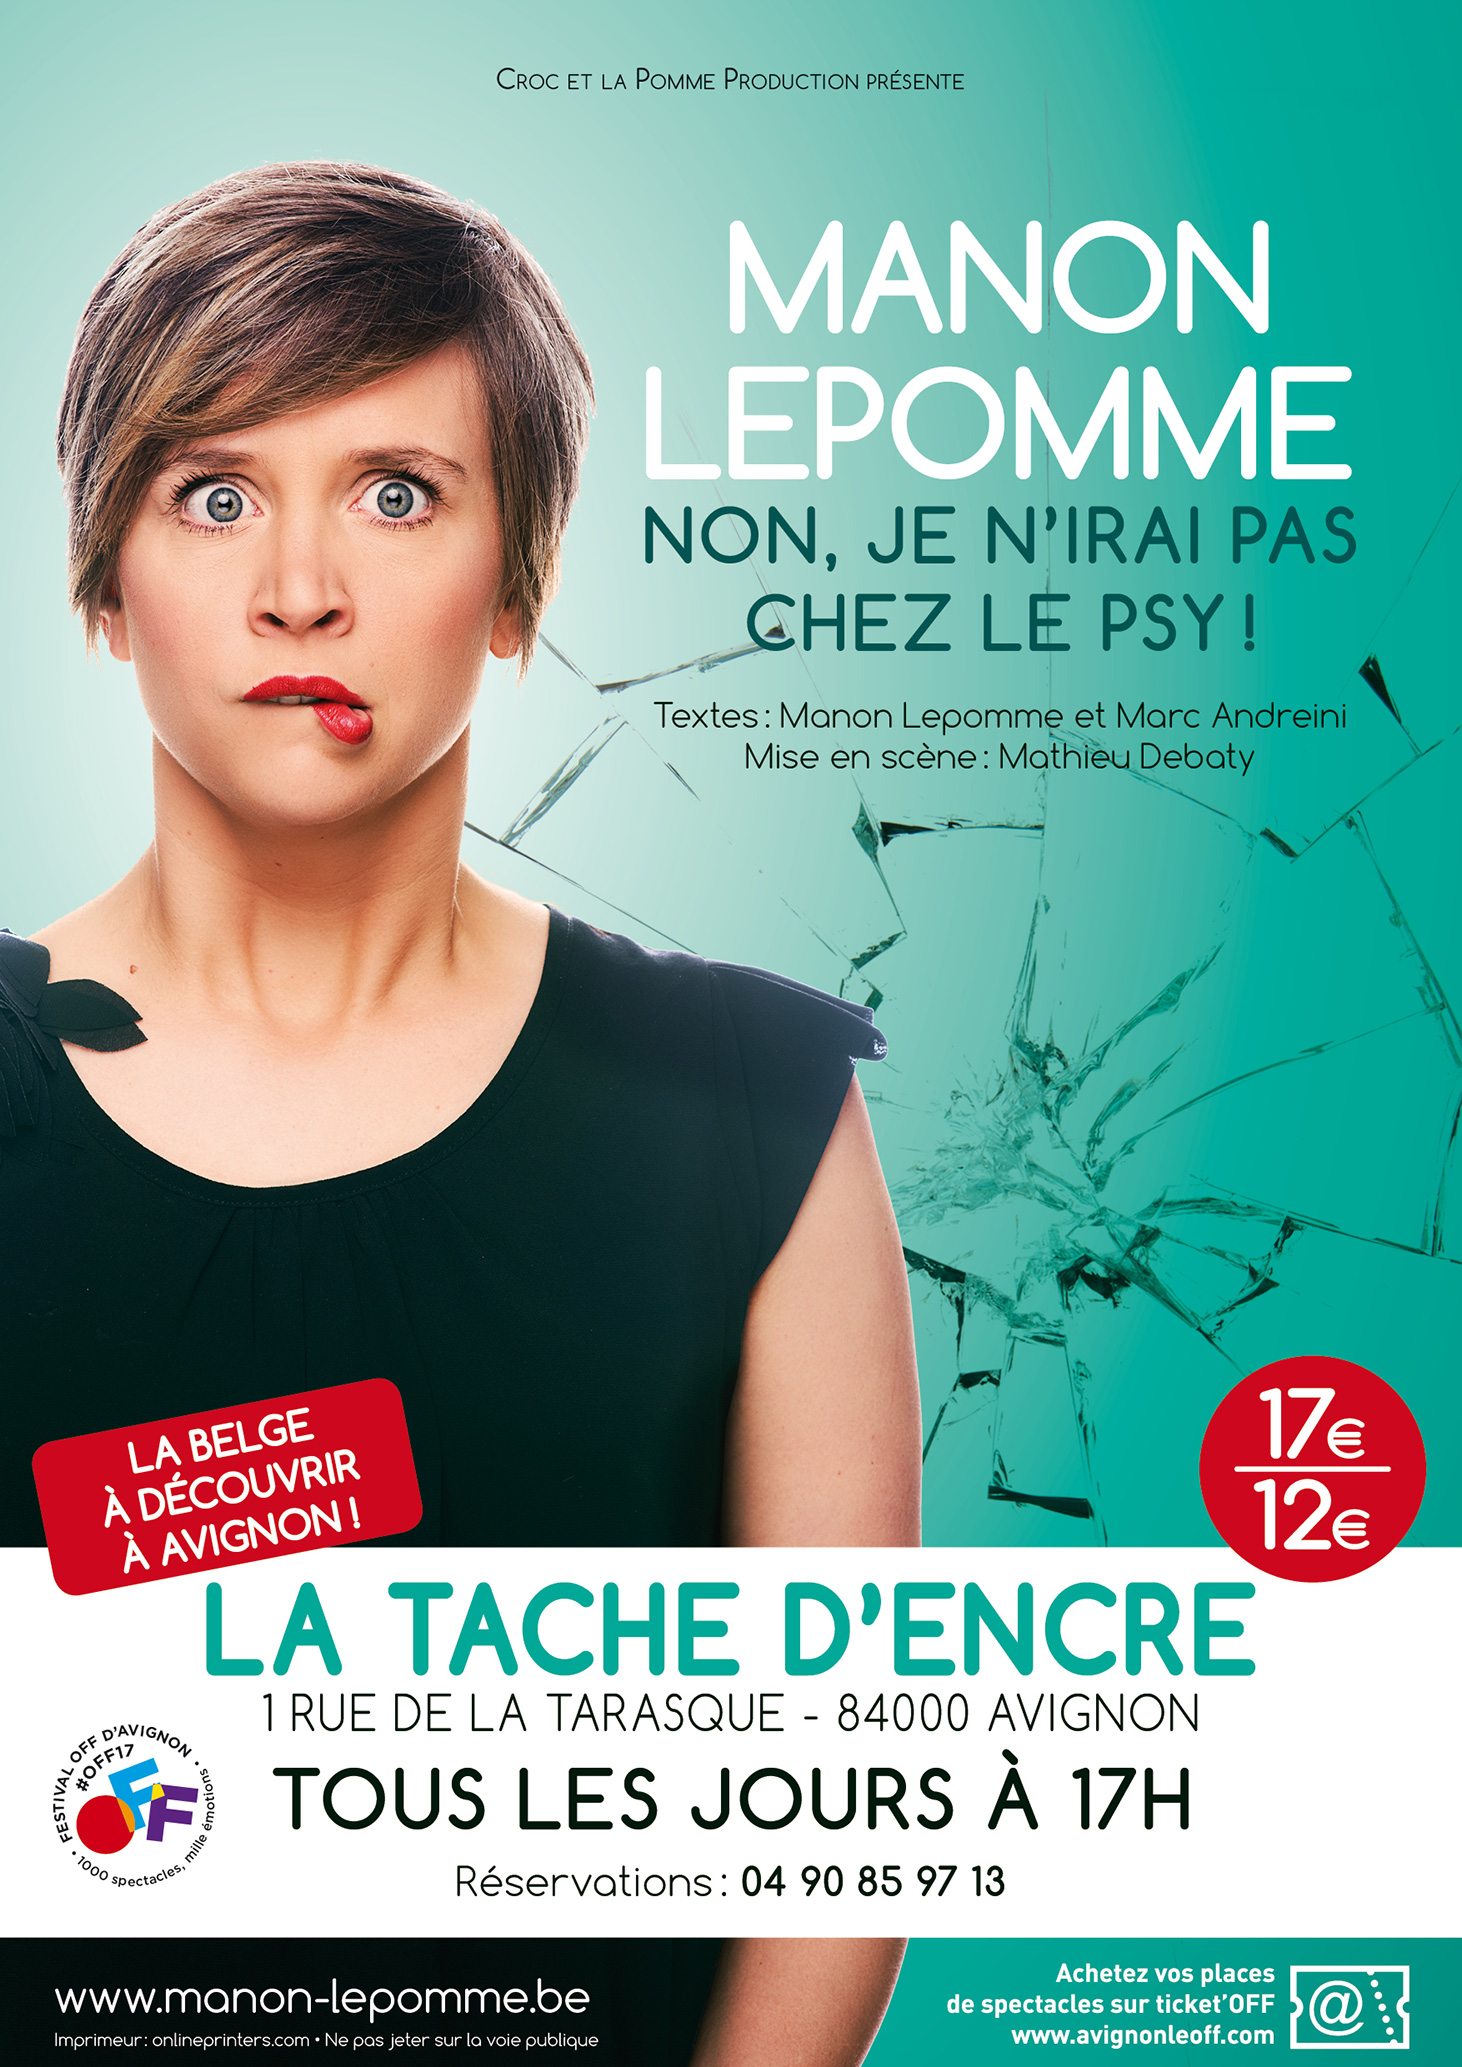 Manon-Lepomme-Avignon-2017G